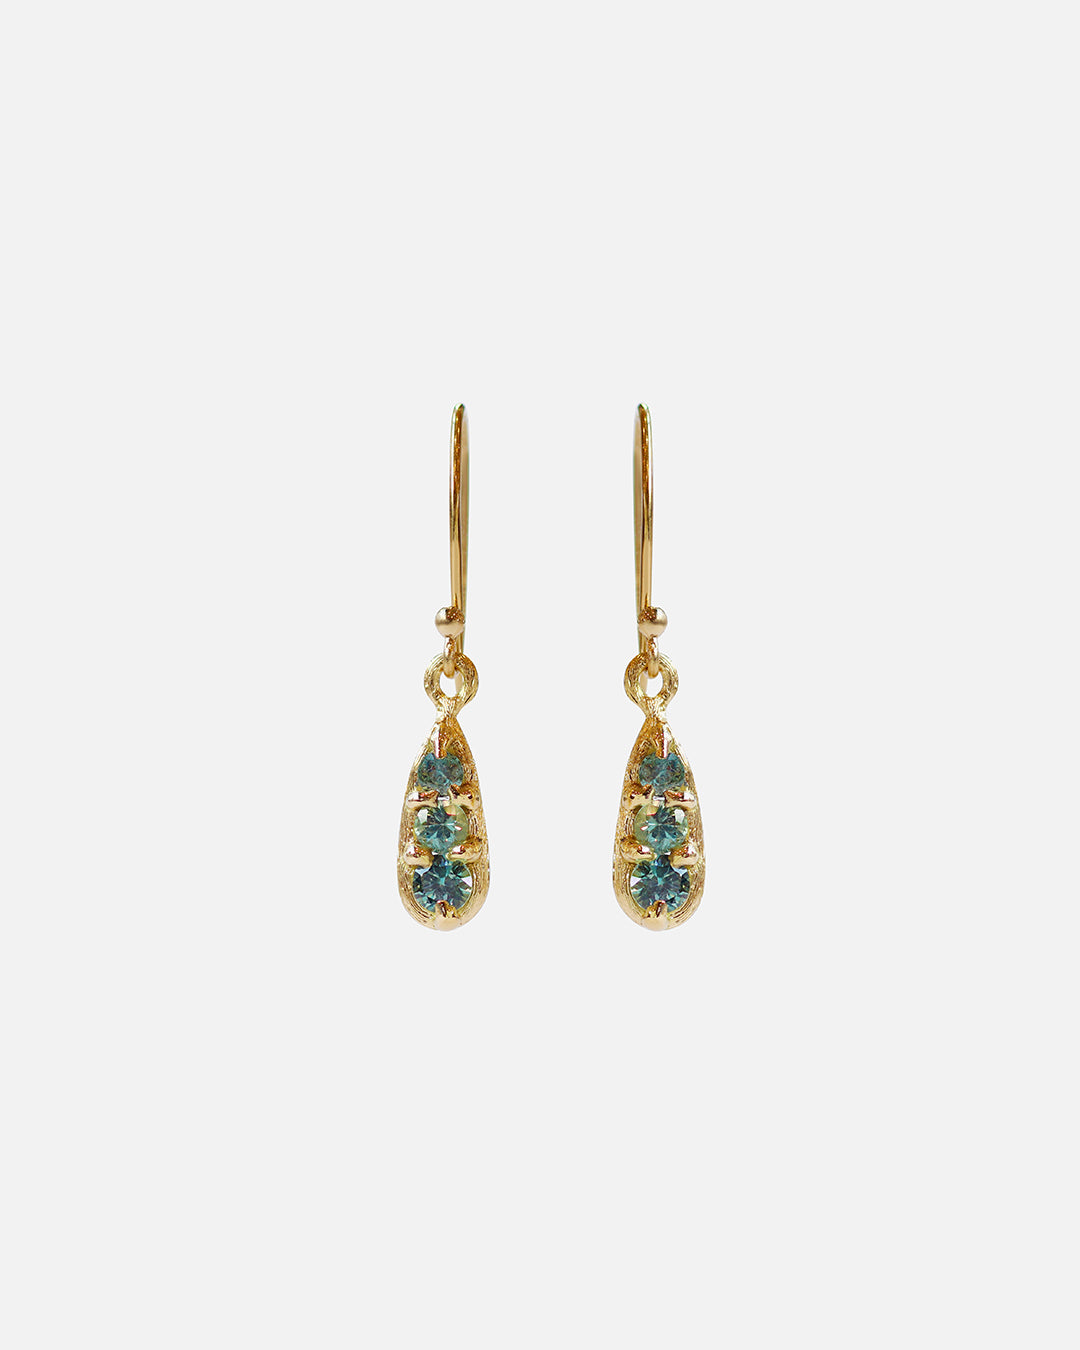 Silk / Blue Green Sapphire Earrings By Hiroyo in earrings Category